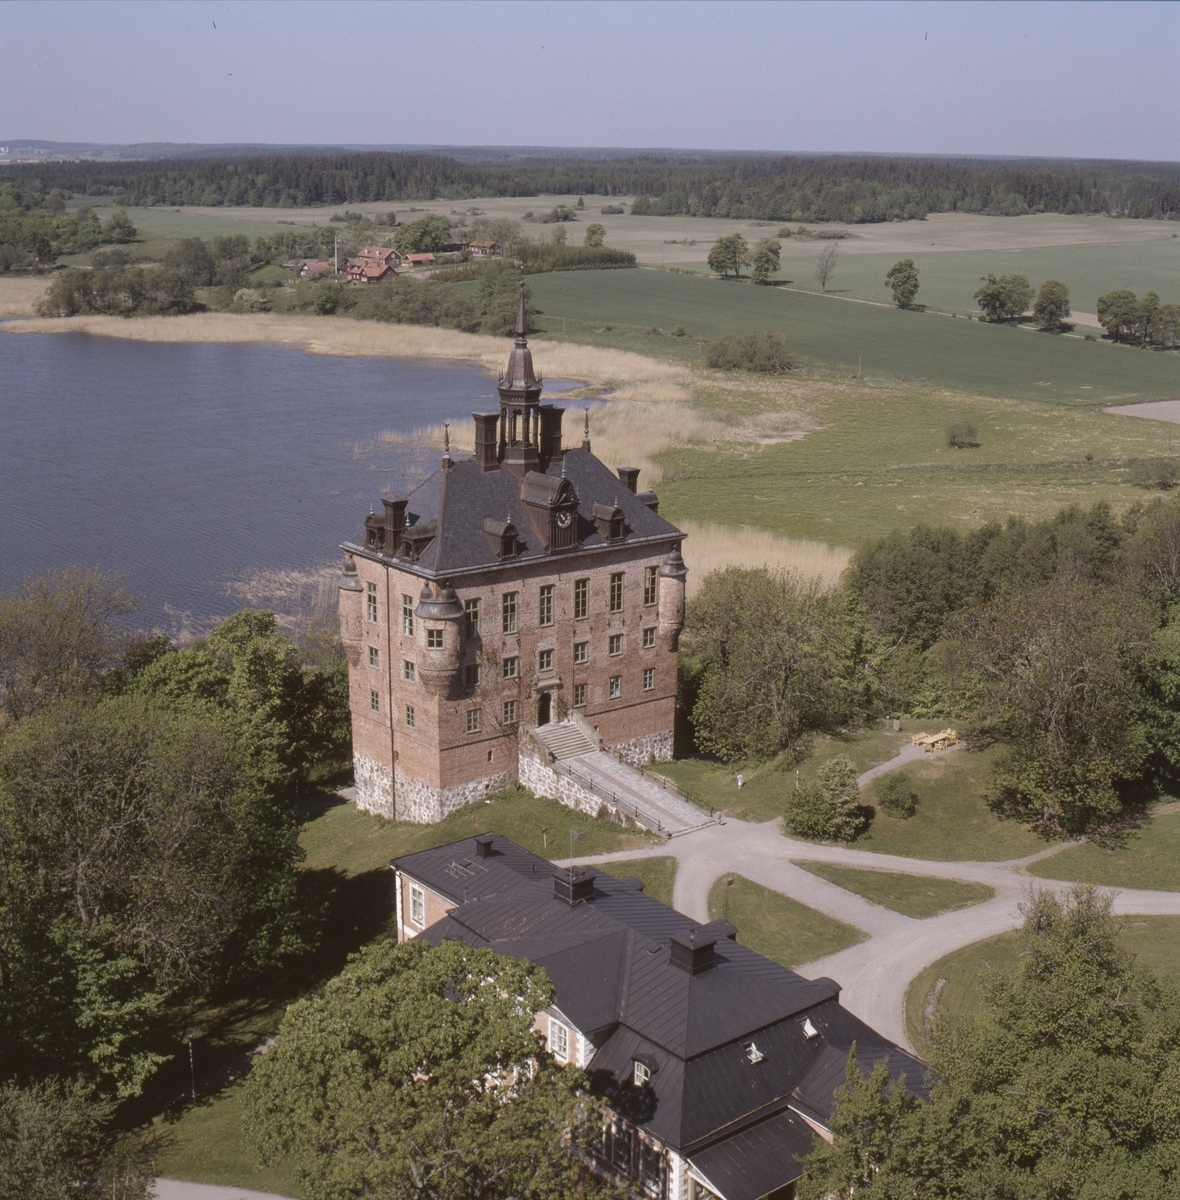 Vy över Wiks slott vid Mälaren, Viks socken, Uppland, juni 1989